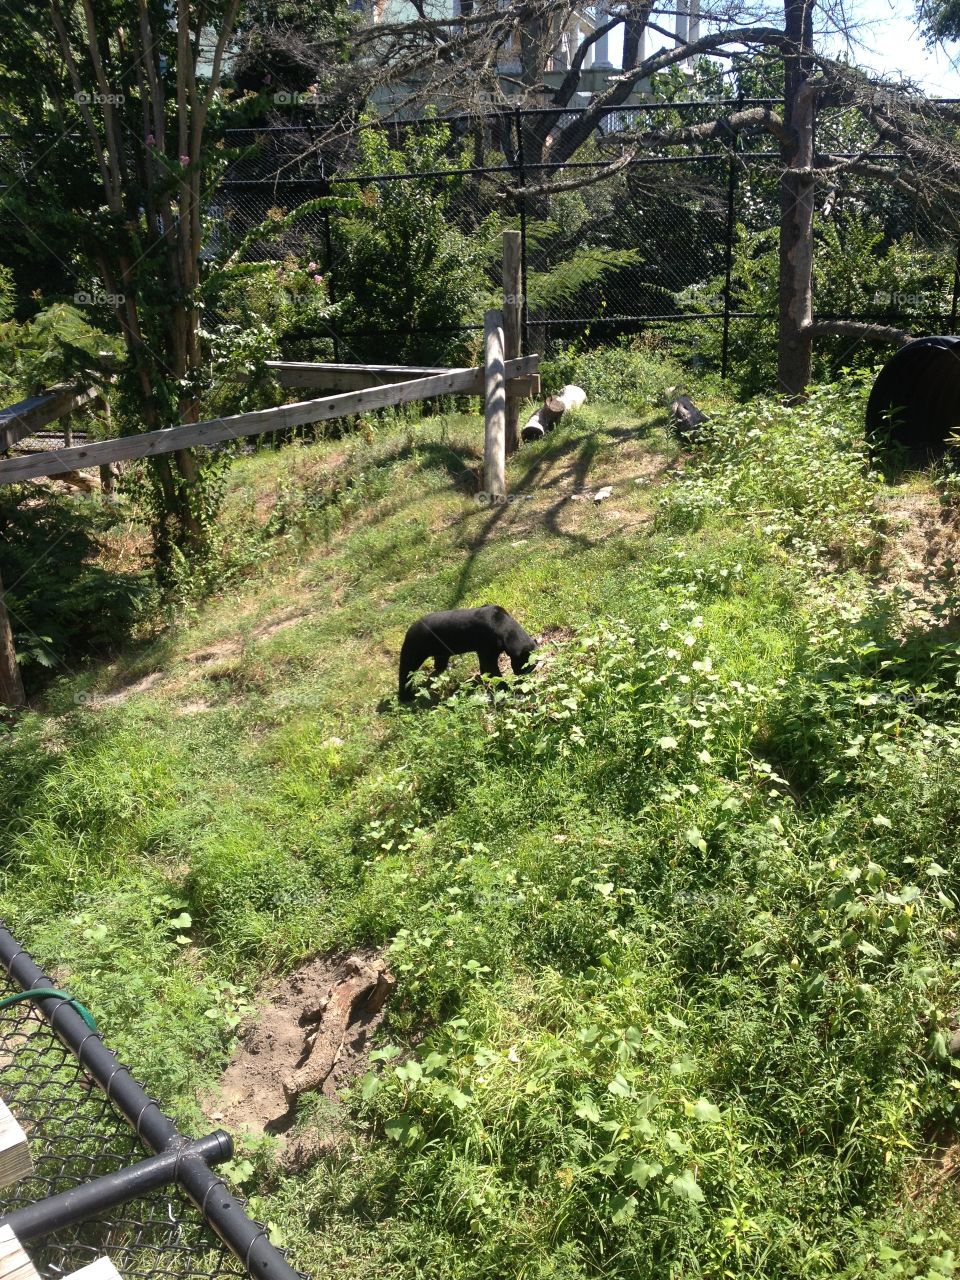 a black bear at the zoo